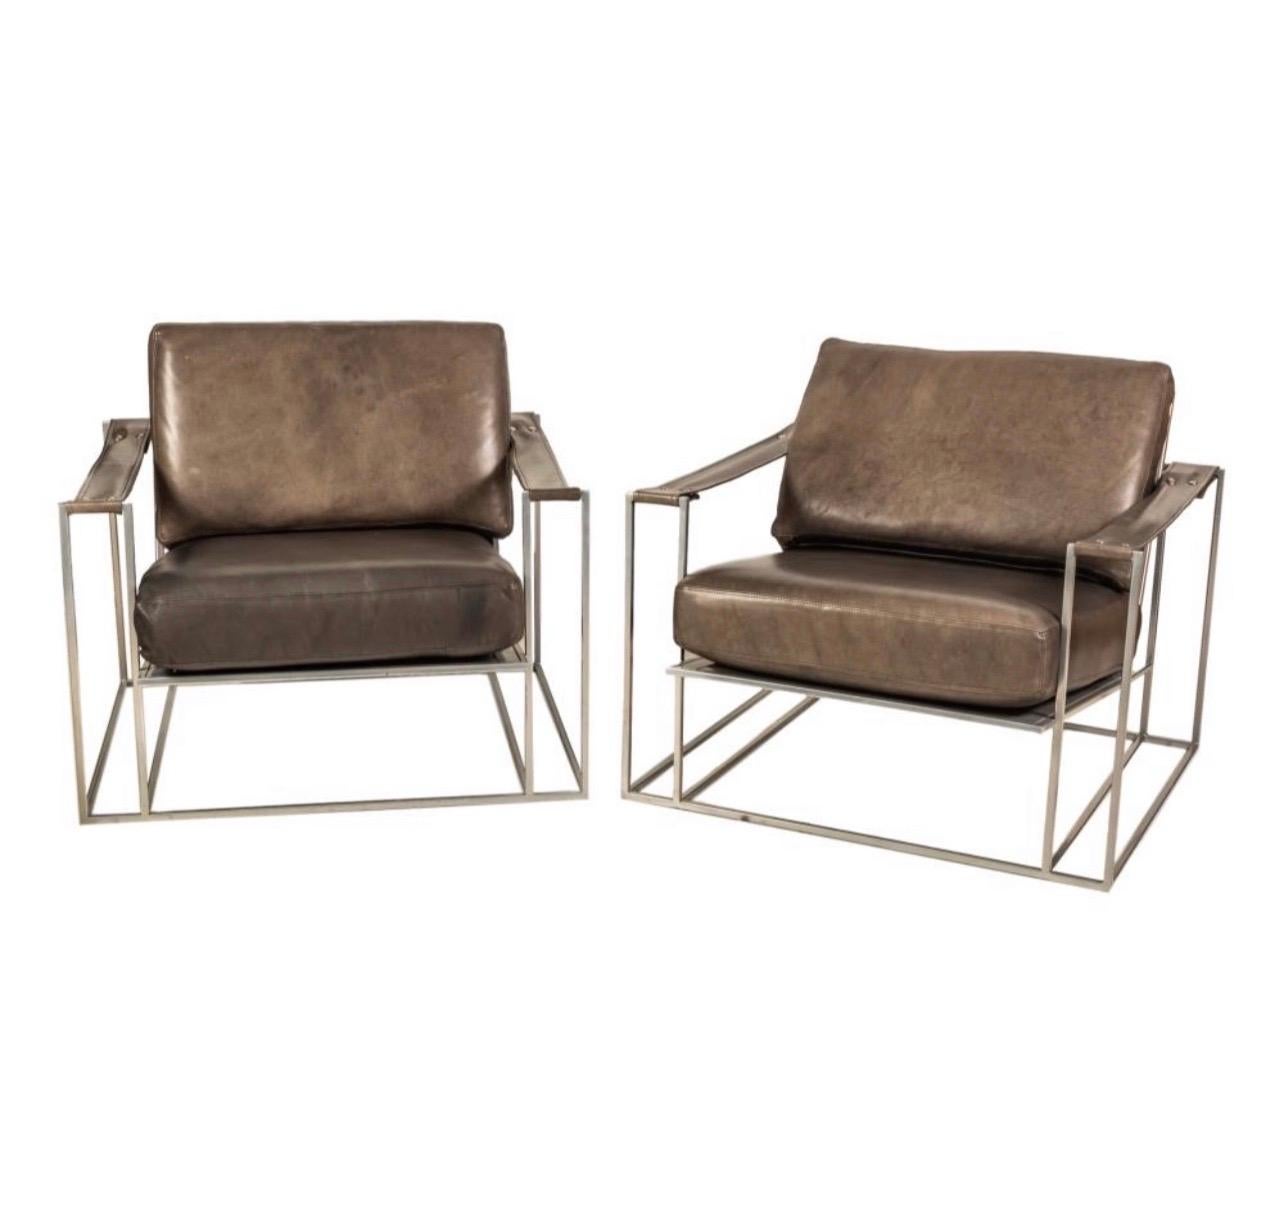 Paire de fauteuils Milo Baughman fabriqués pour Thayer. 
Ils ont conservé leur revêtement d'origine en similicuir dans des tons gris foncé/brun.
Conçu par Milo Baughman en 1972.